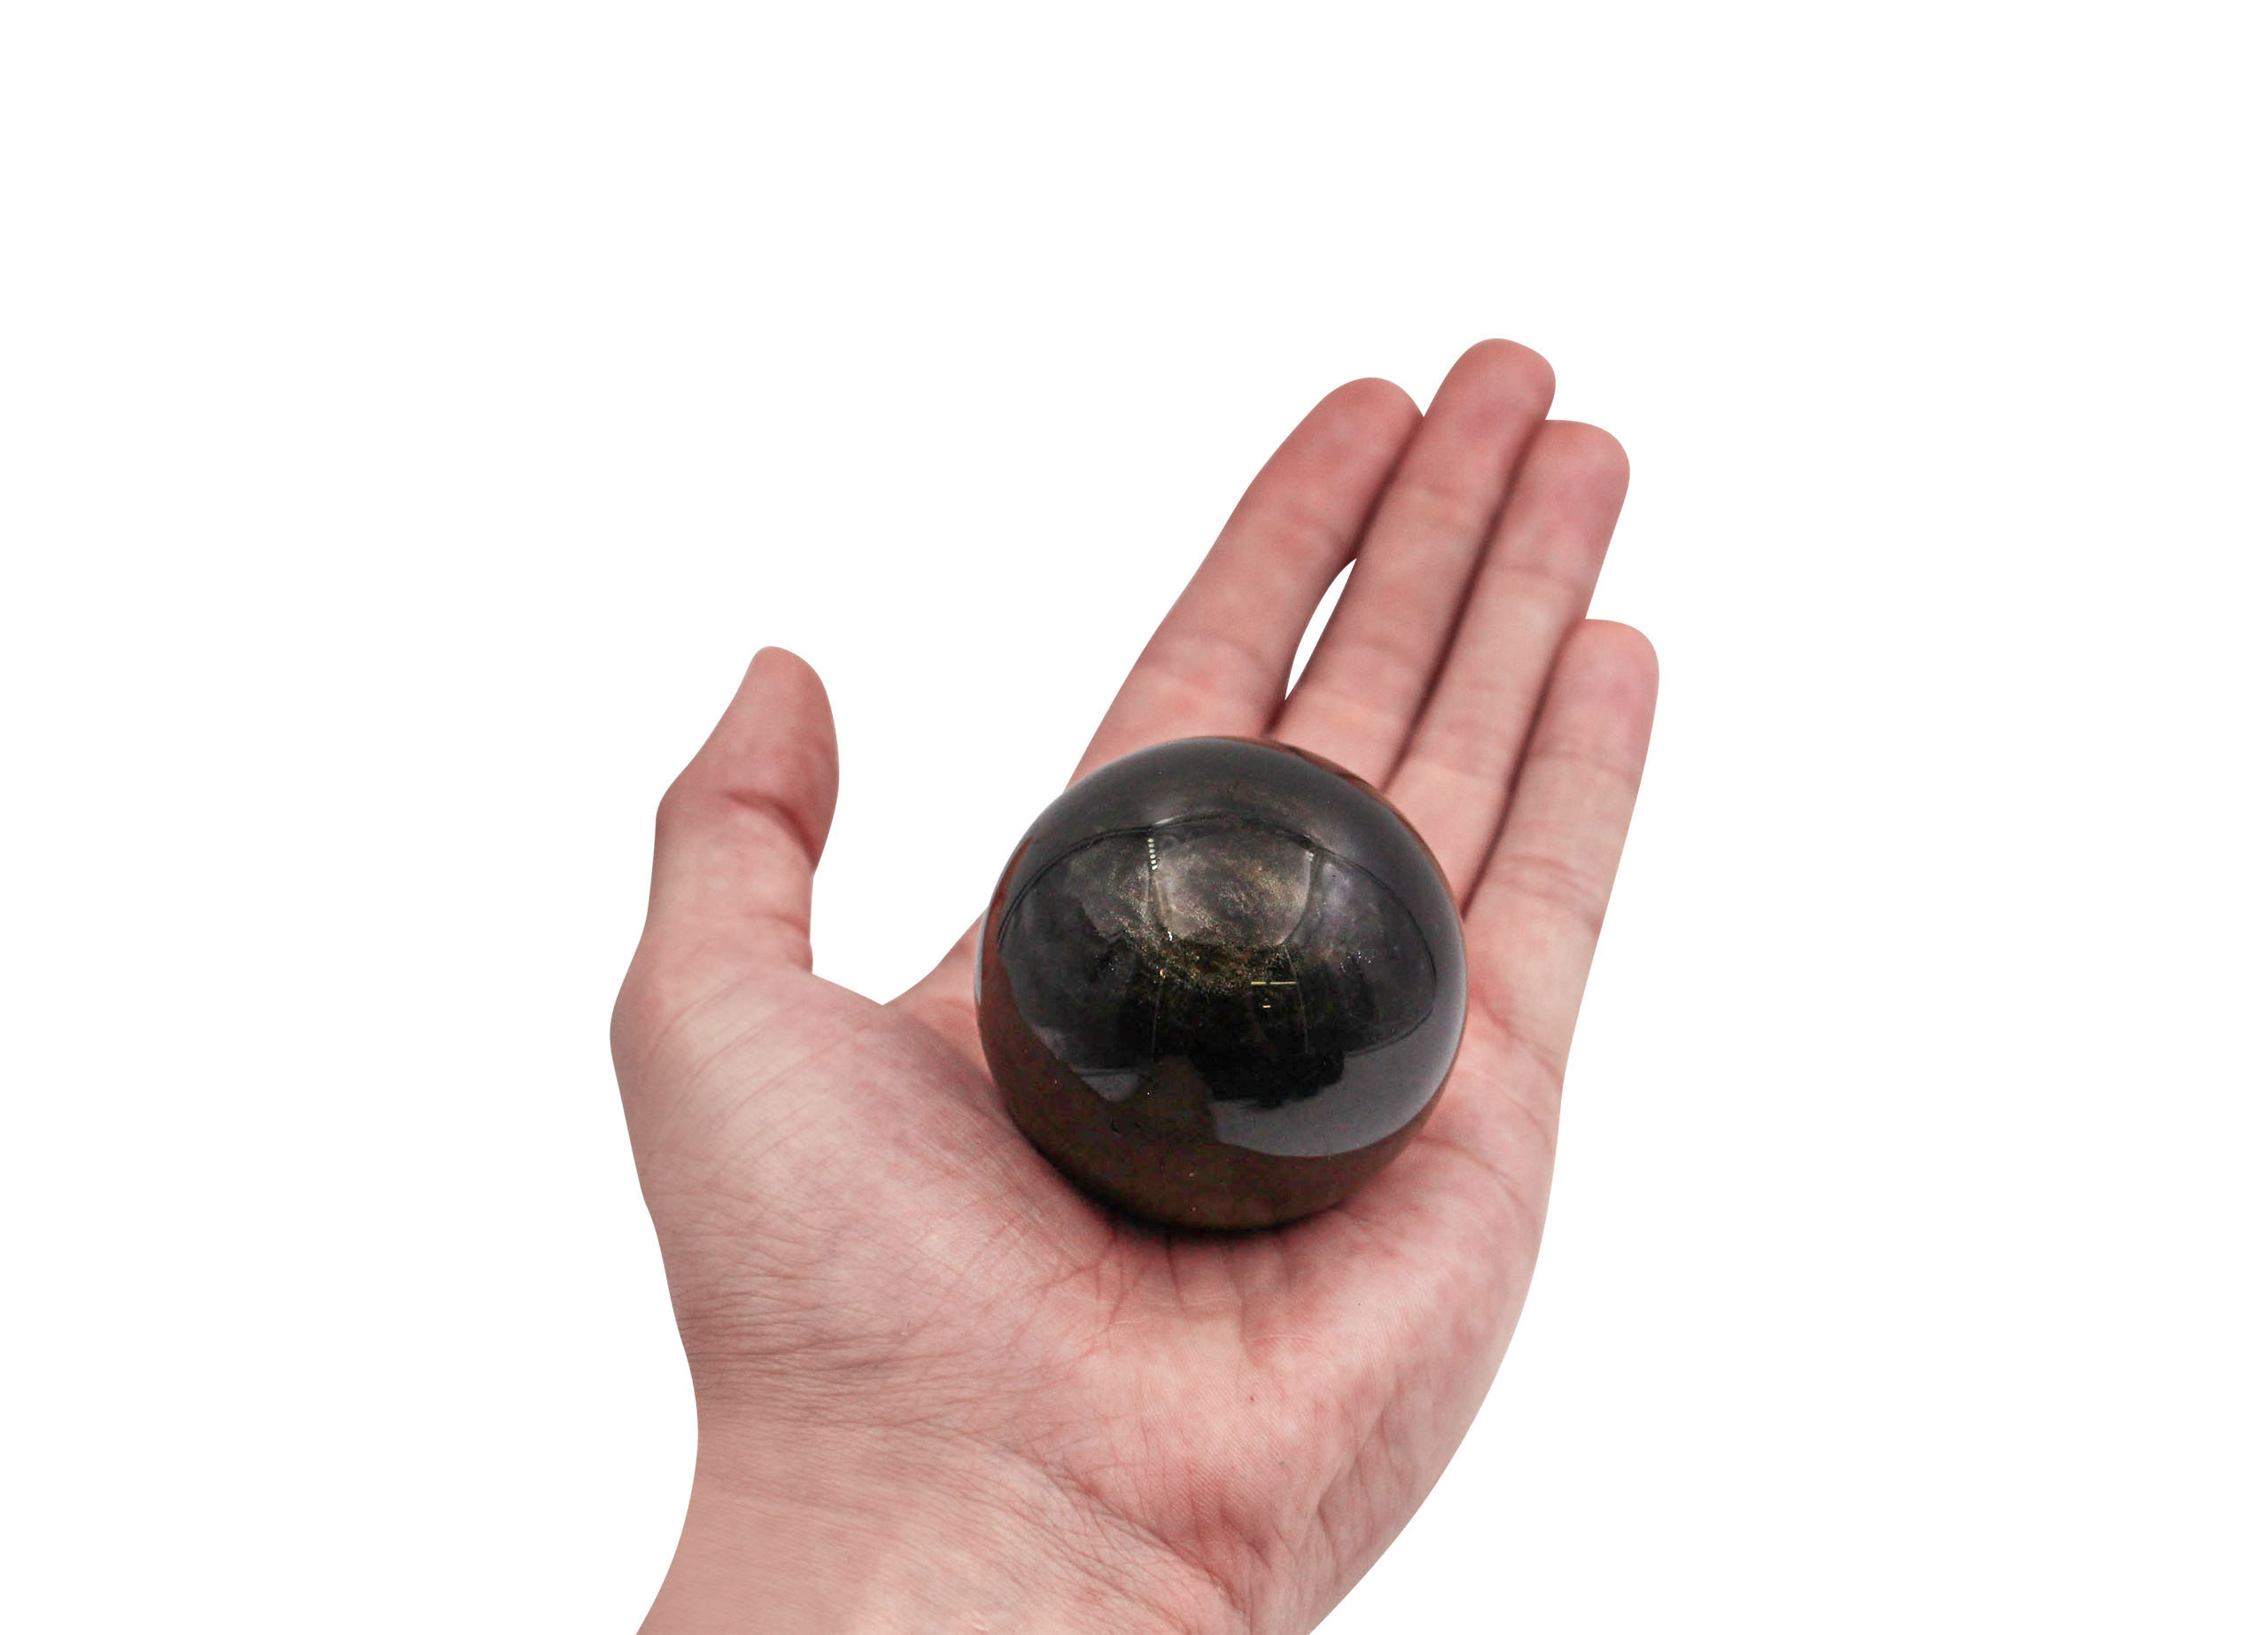 Golden Obsidian - Sphere boule 40-60 mm (M-XL) - Crystal Dreams